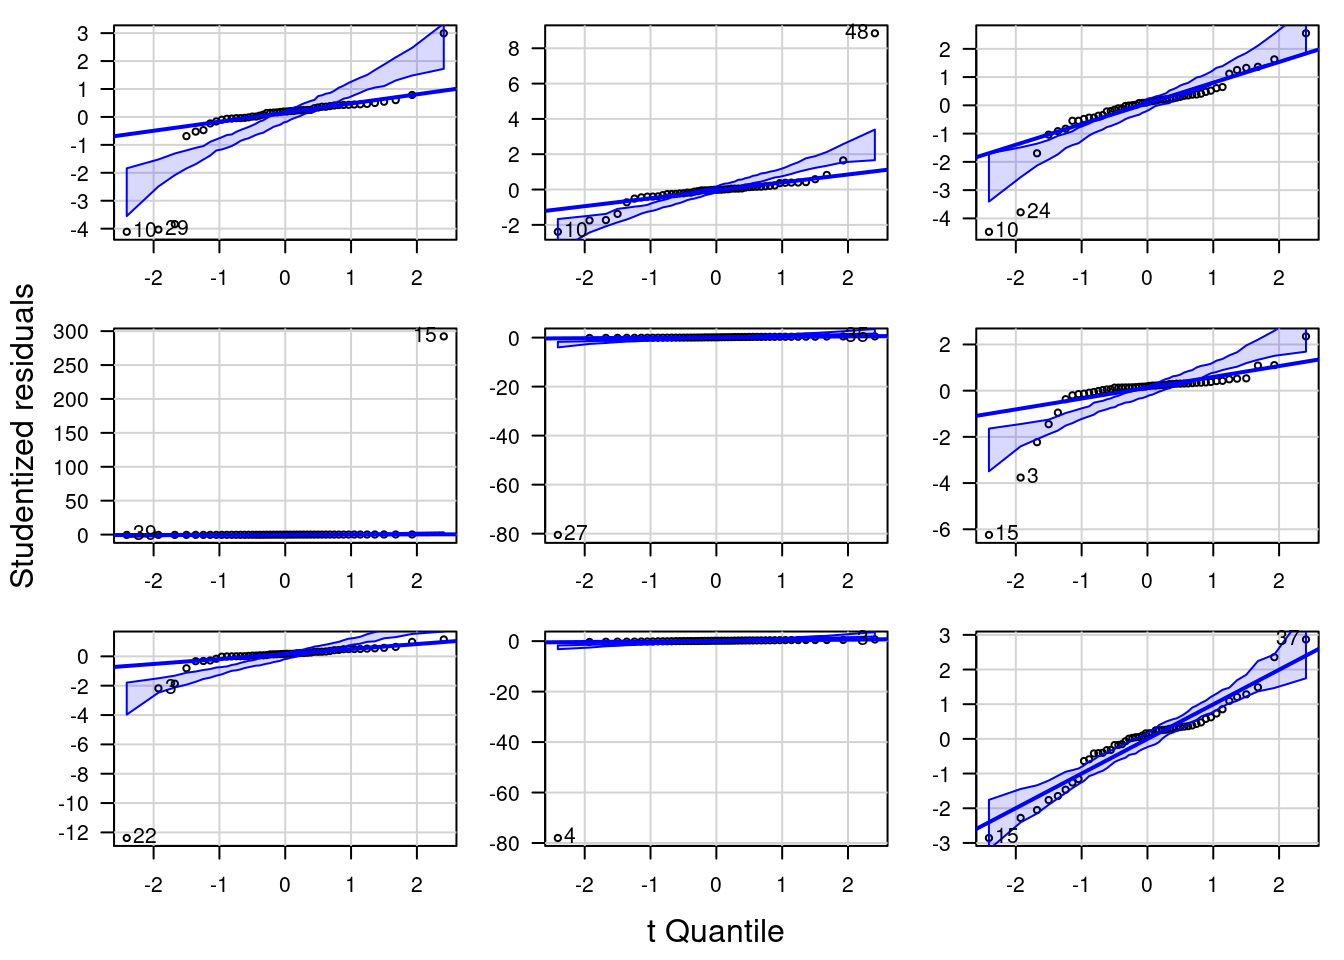 QQ-Plot für Cauchy-verteilte Residuen (scale = 7, location = 0). Die neun Plots zeigen die Variabilität für unterschiedliche Zufallsstichproben.